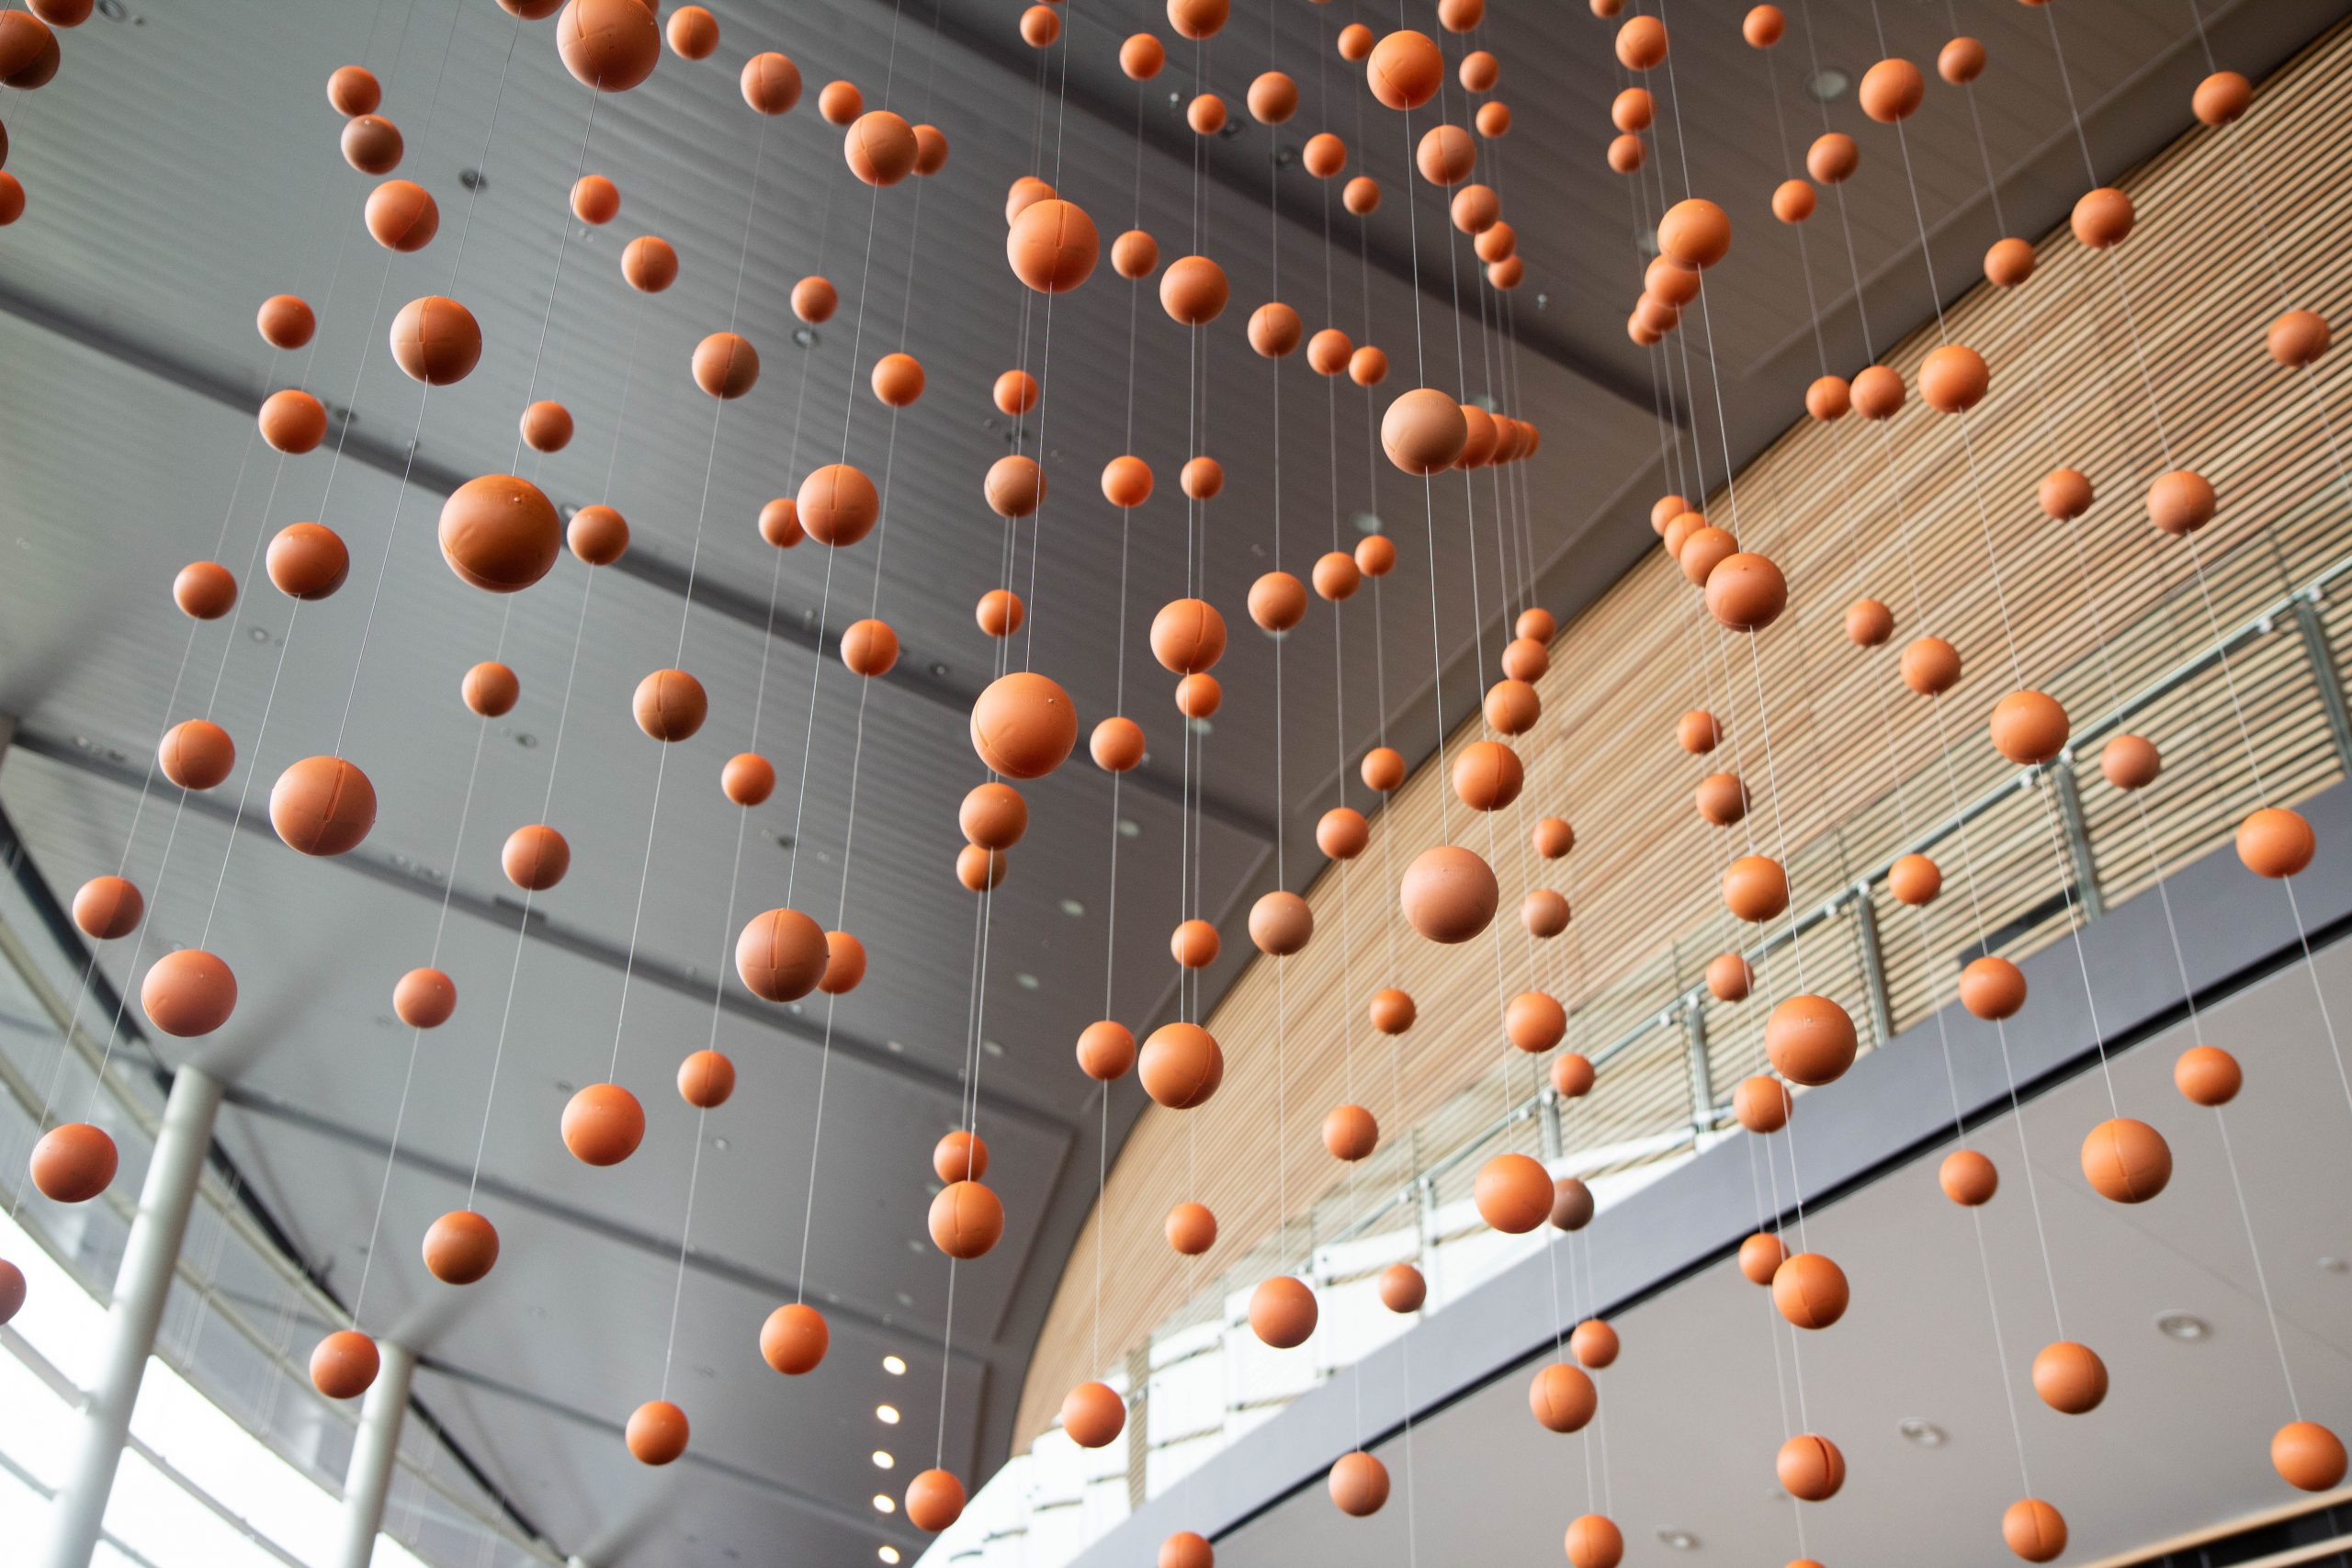 Orange spheres suspended in space